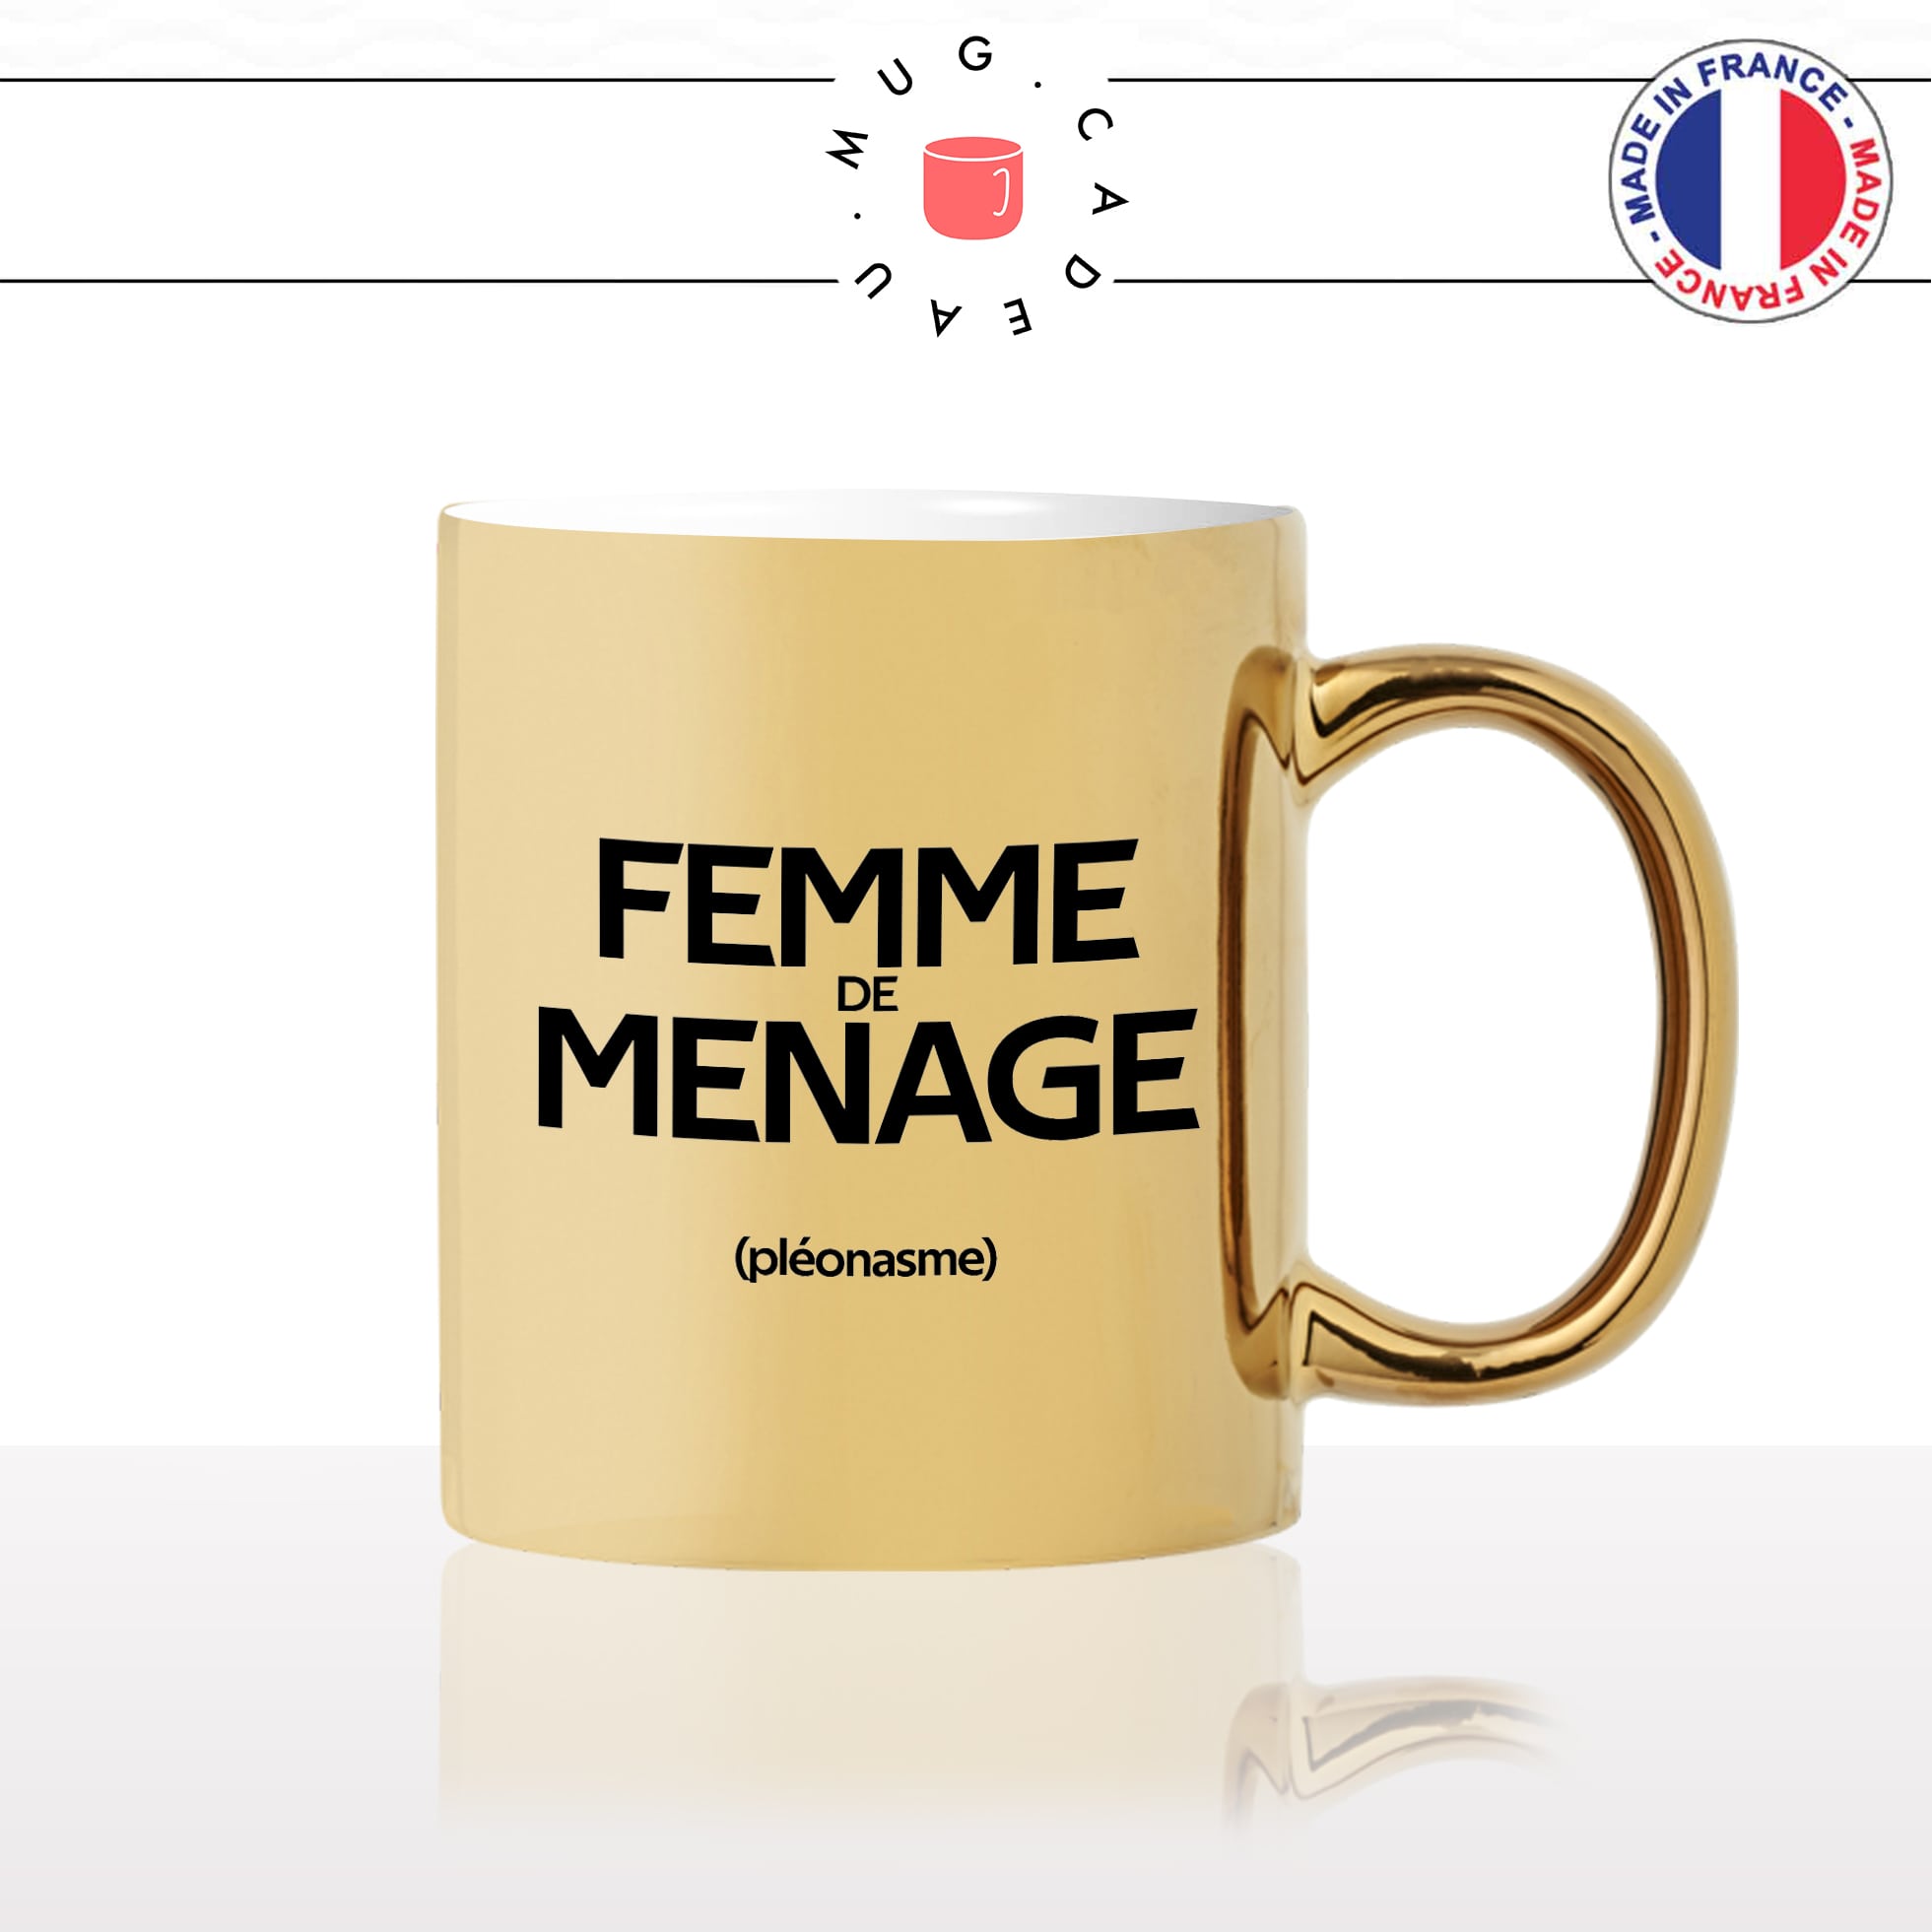 mug-tasse-or-doré-gold-femme-de-ménage-pénible-couple-pléonasme-couzine-synonymes-copine-humour-fun-idée-cadeau-originale-cool2-min